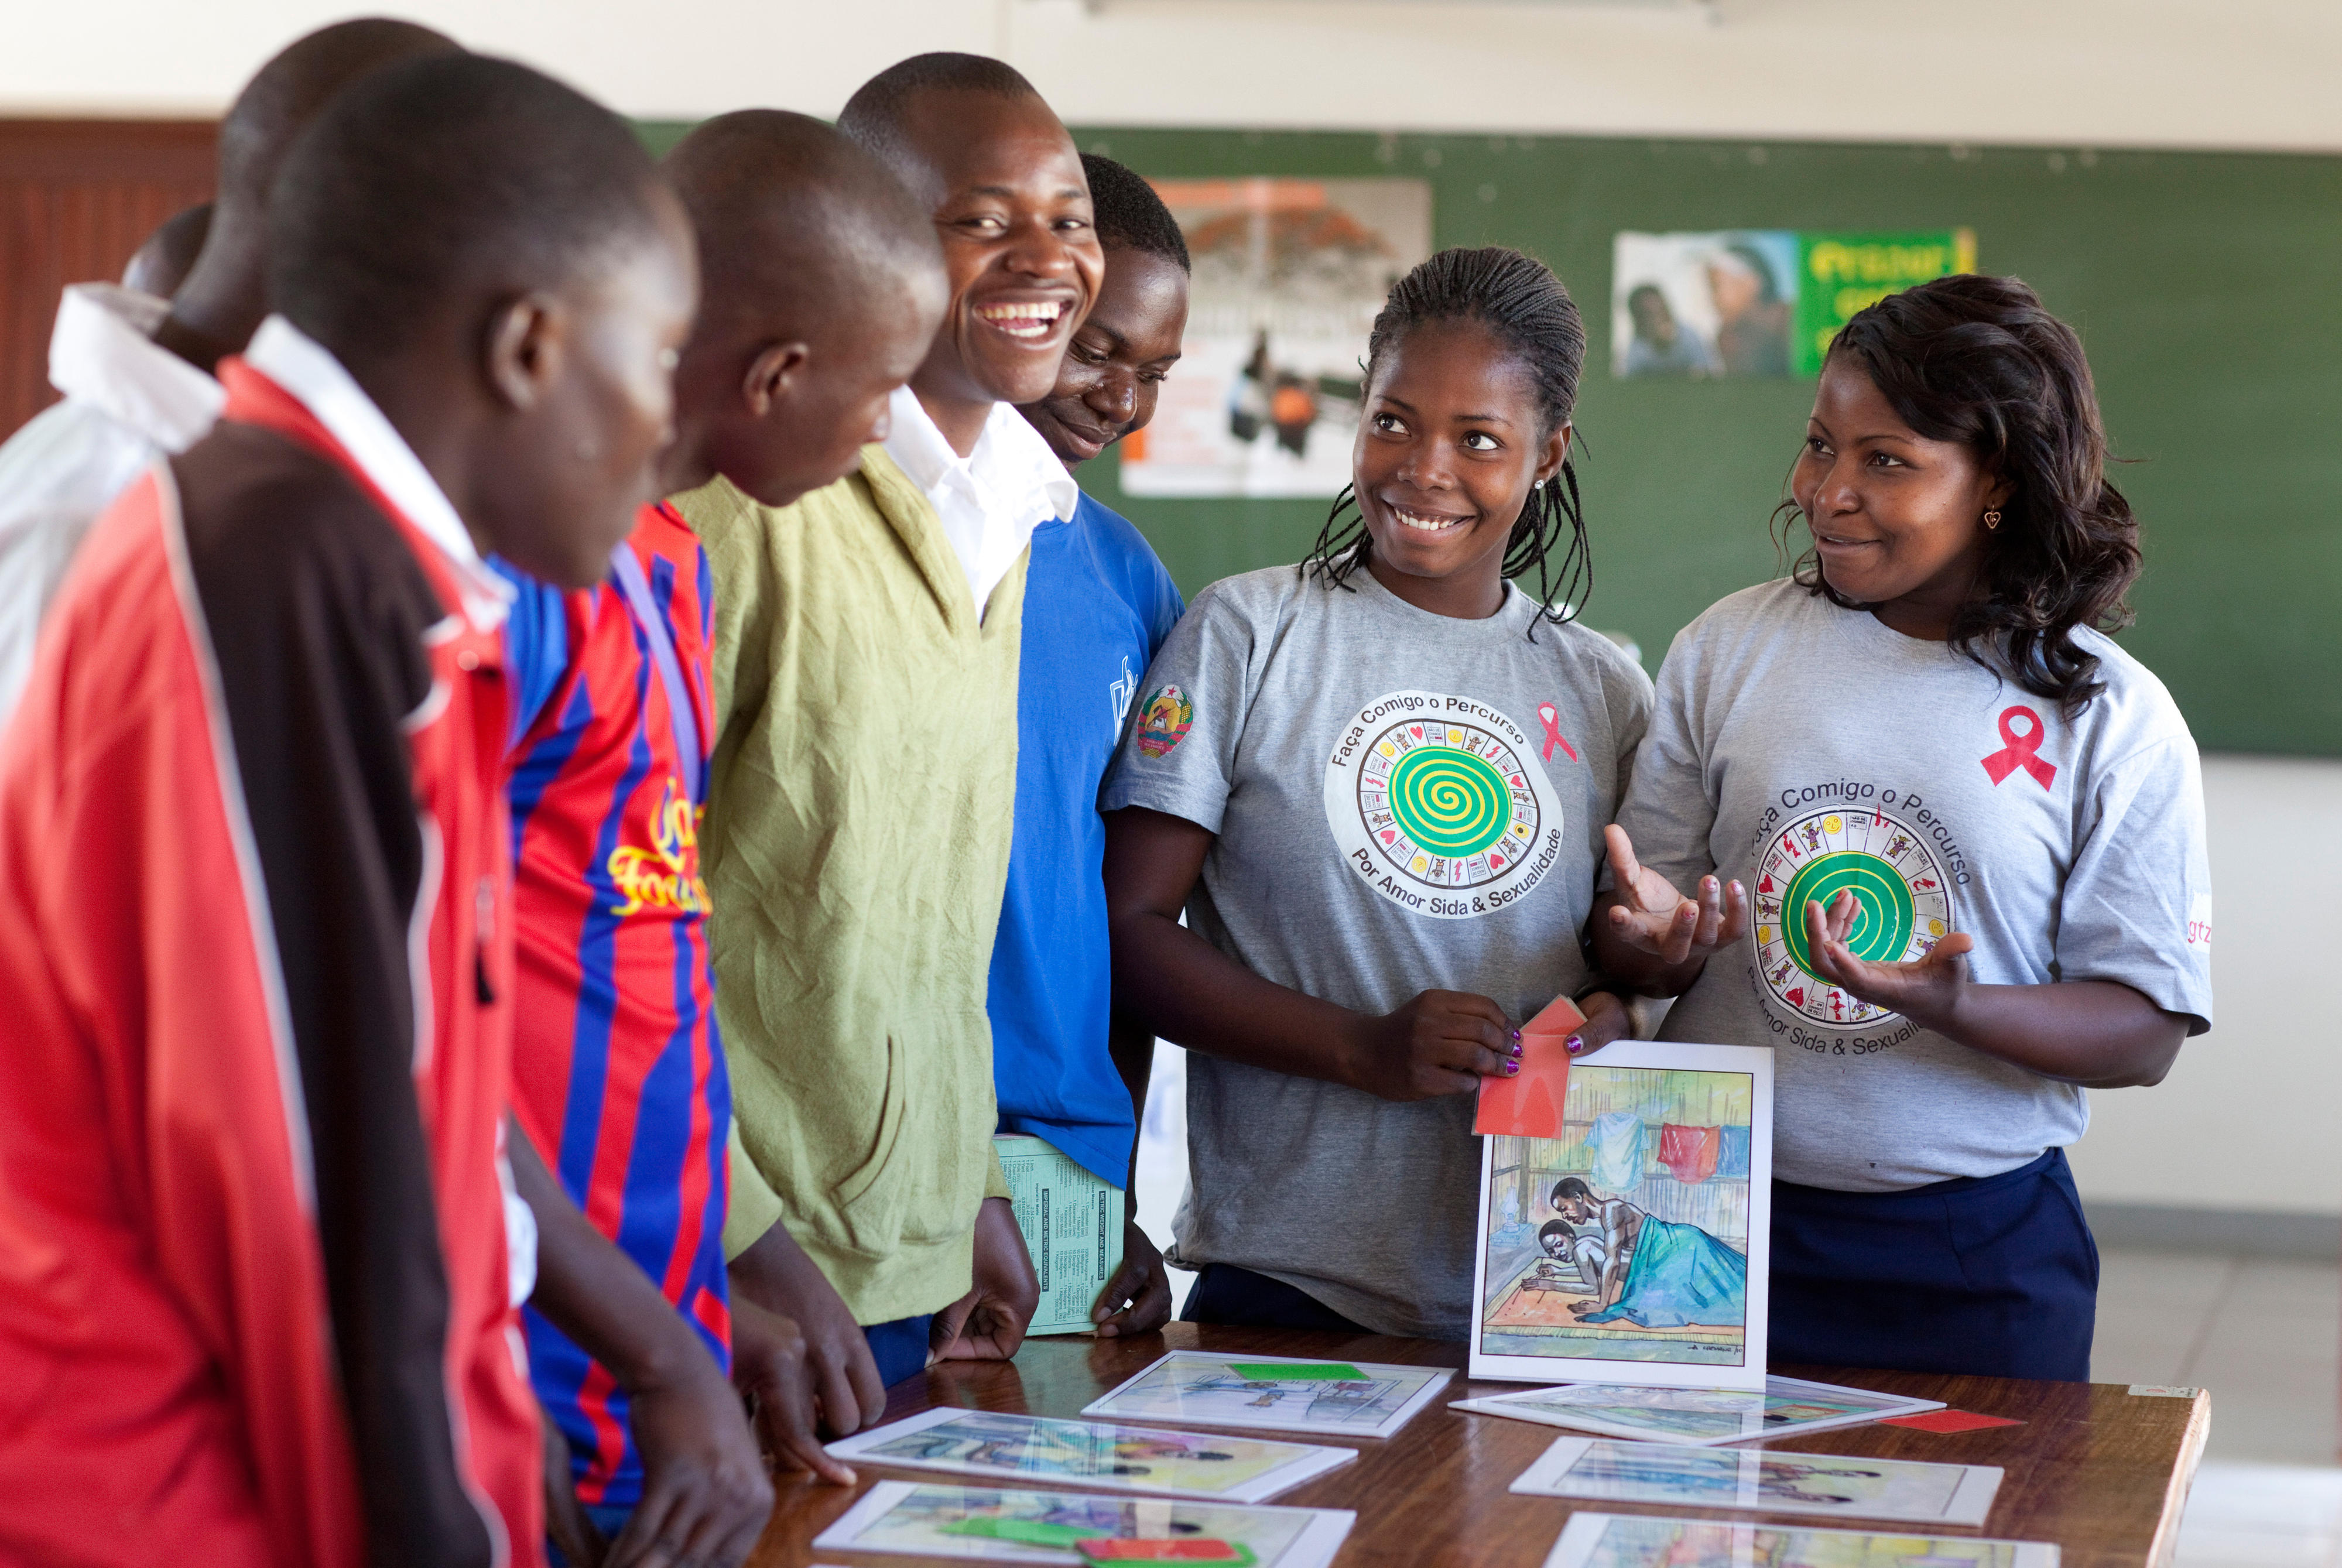 Angehende Lehrerinnen in Mosambik informieren Kollegen über die Risiken einer HIV-Infektion